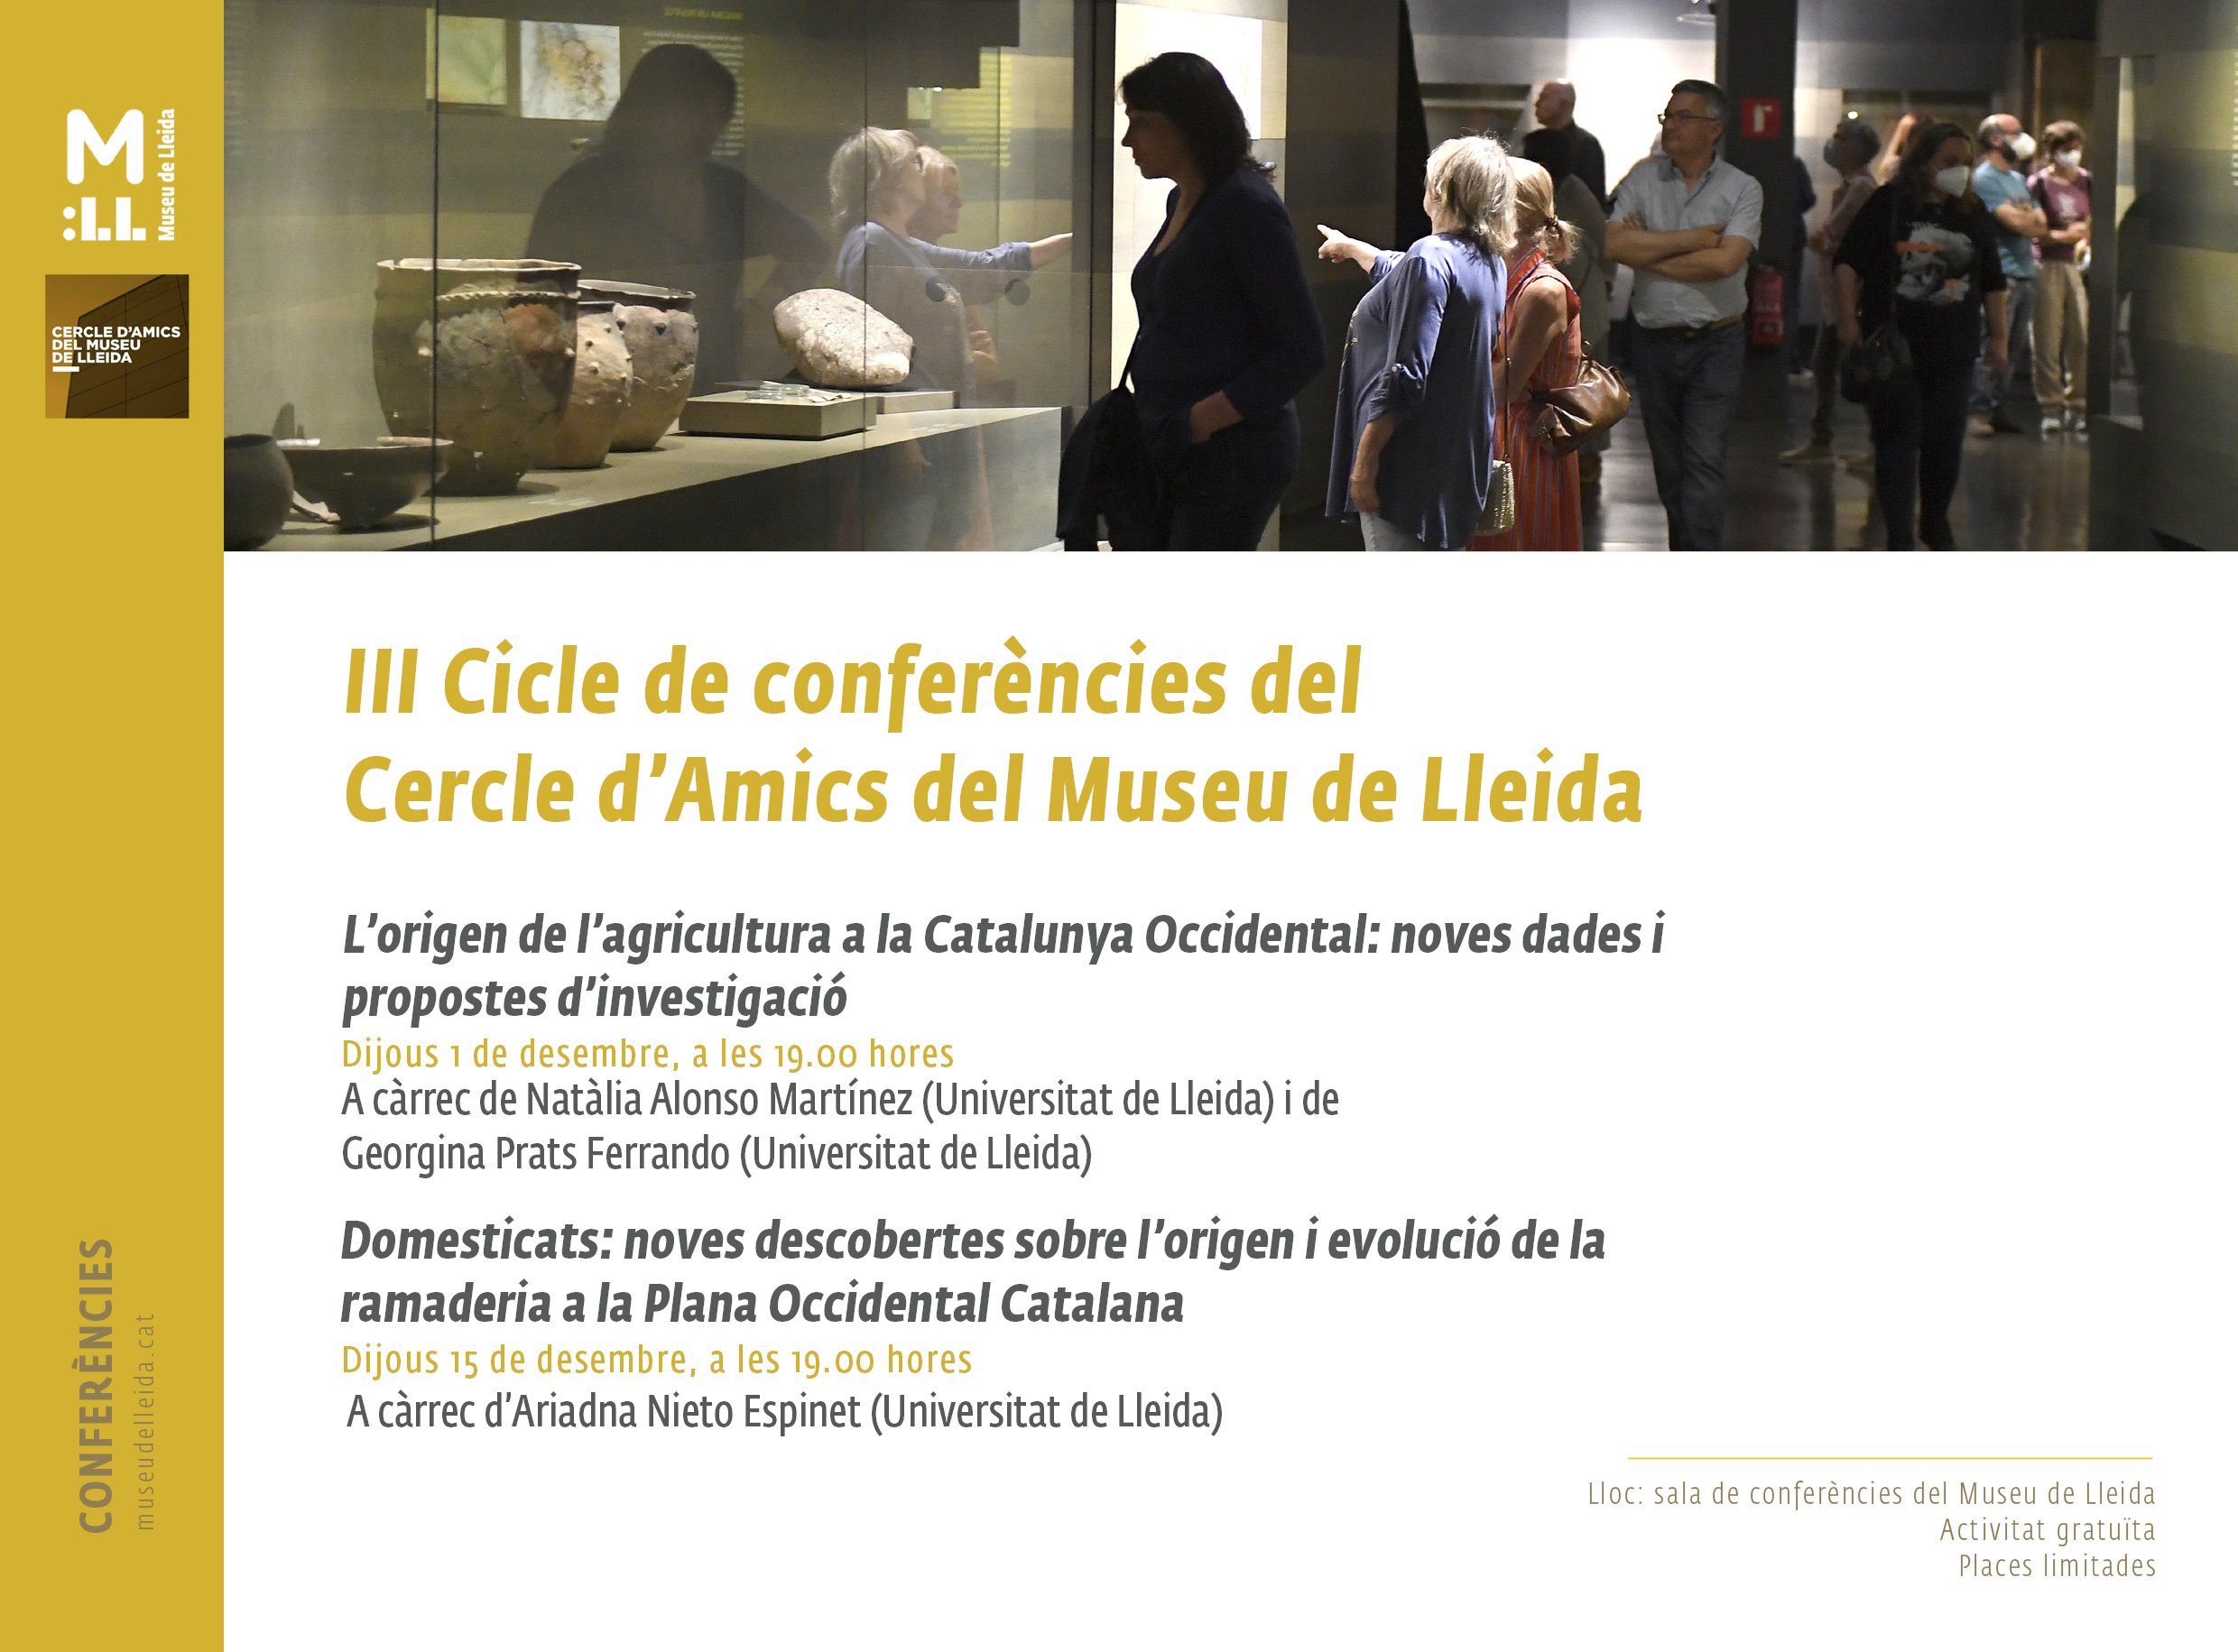 III Cicle de conferències del Cercle d’Amics del Museu de Lleida